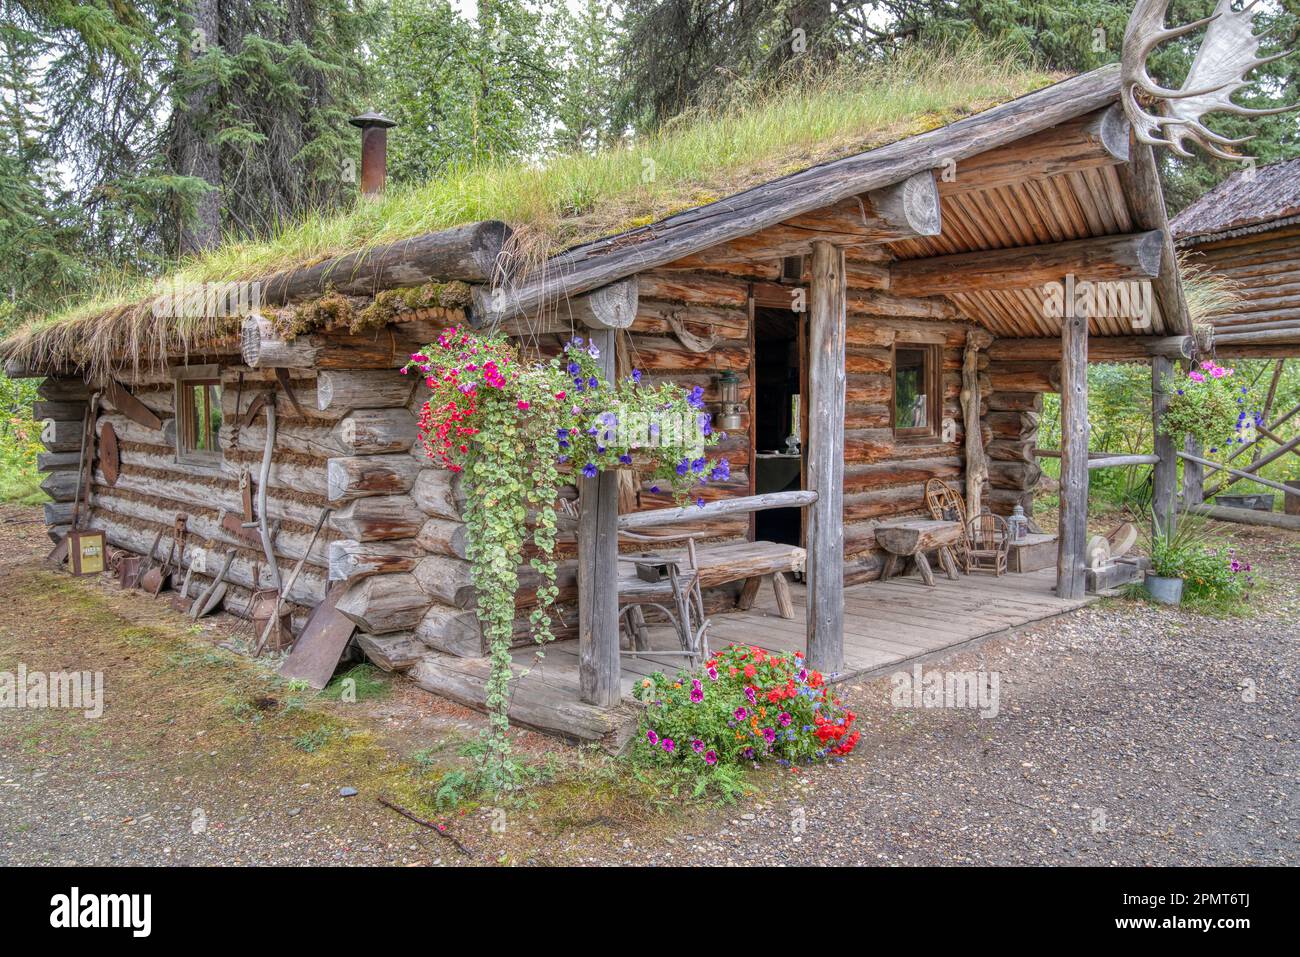 Old Trapper's log cabin in Alaska Stock Photo